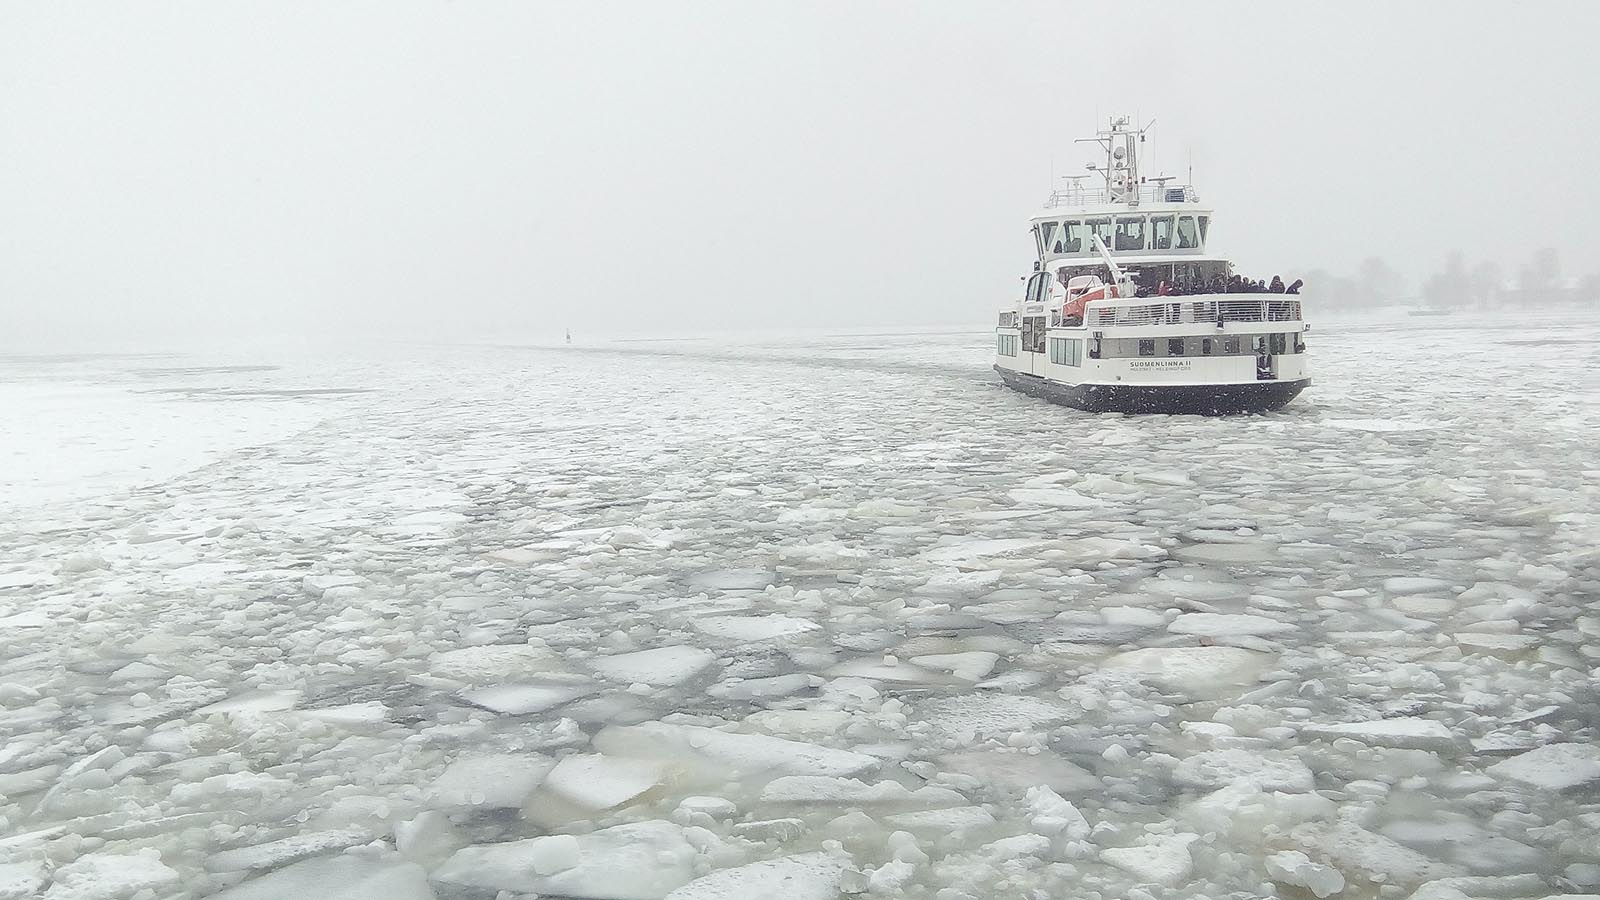 Městský přívoz si probíjí cestu ledem k přístavu. Je duben - v zimě se tu zřejmě bez ledoborců neobejdou. Snad, že by pokládali tramvajové koleje na led jako v nedalekém Petrohradu.